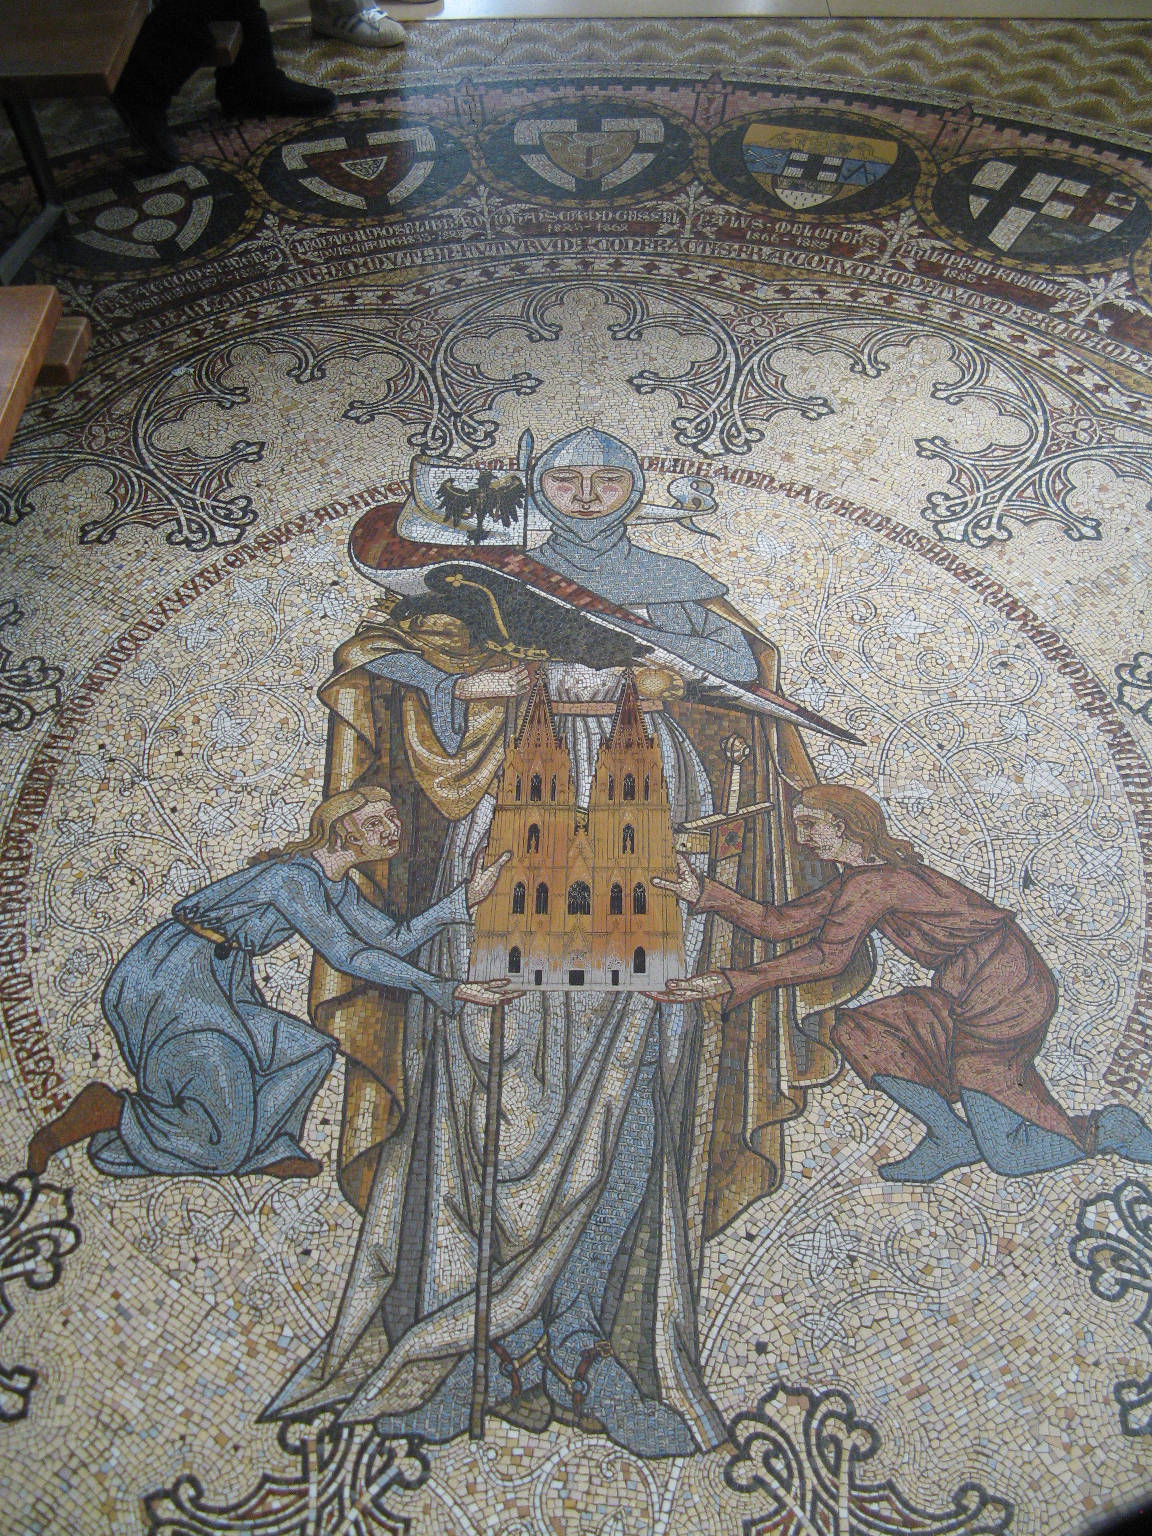 A mosaic on the floor